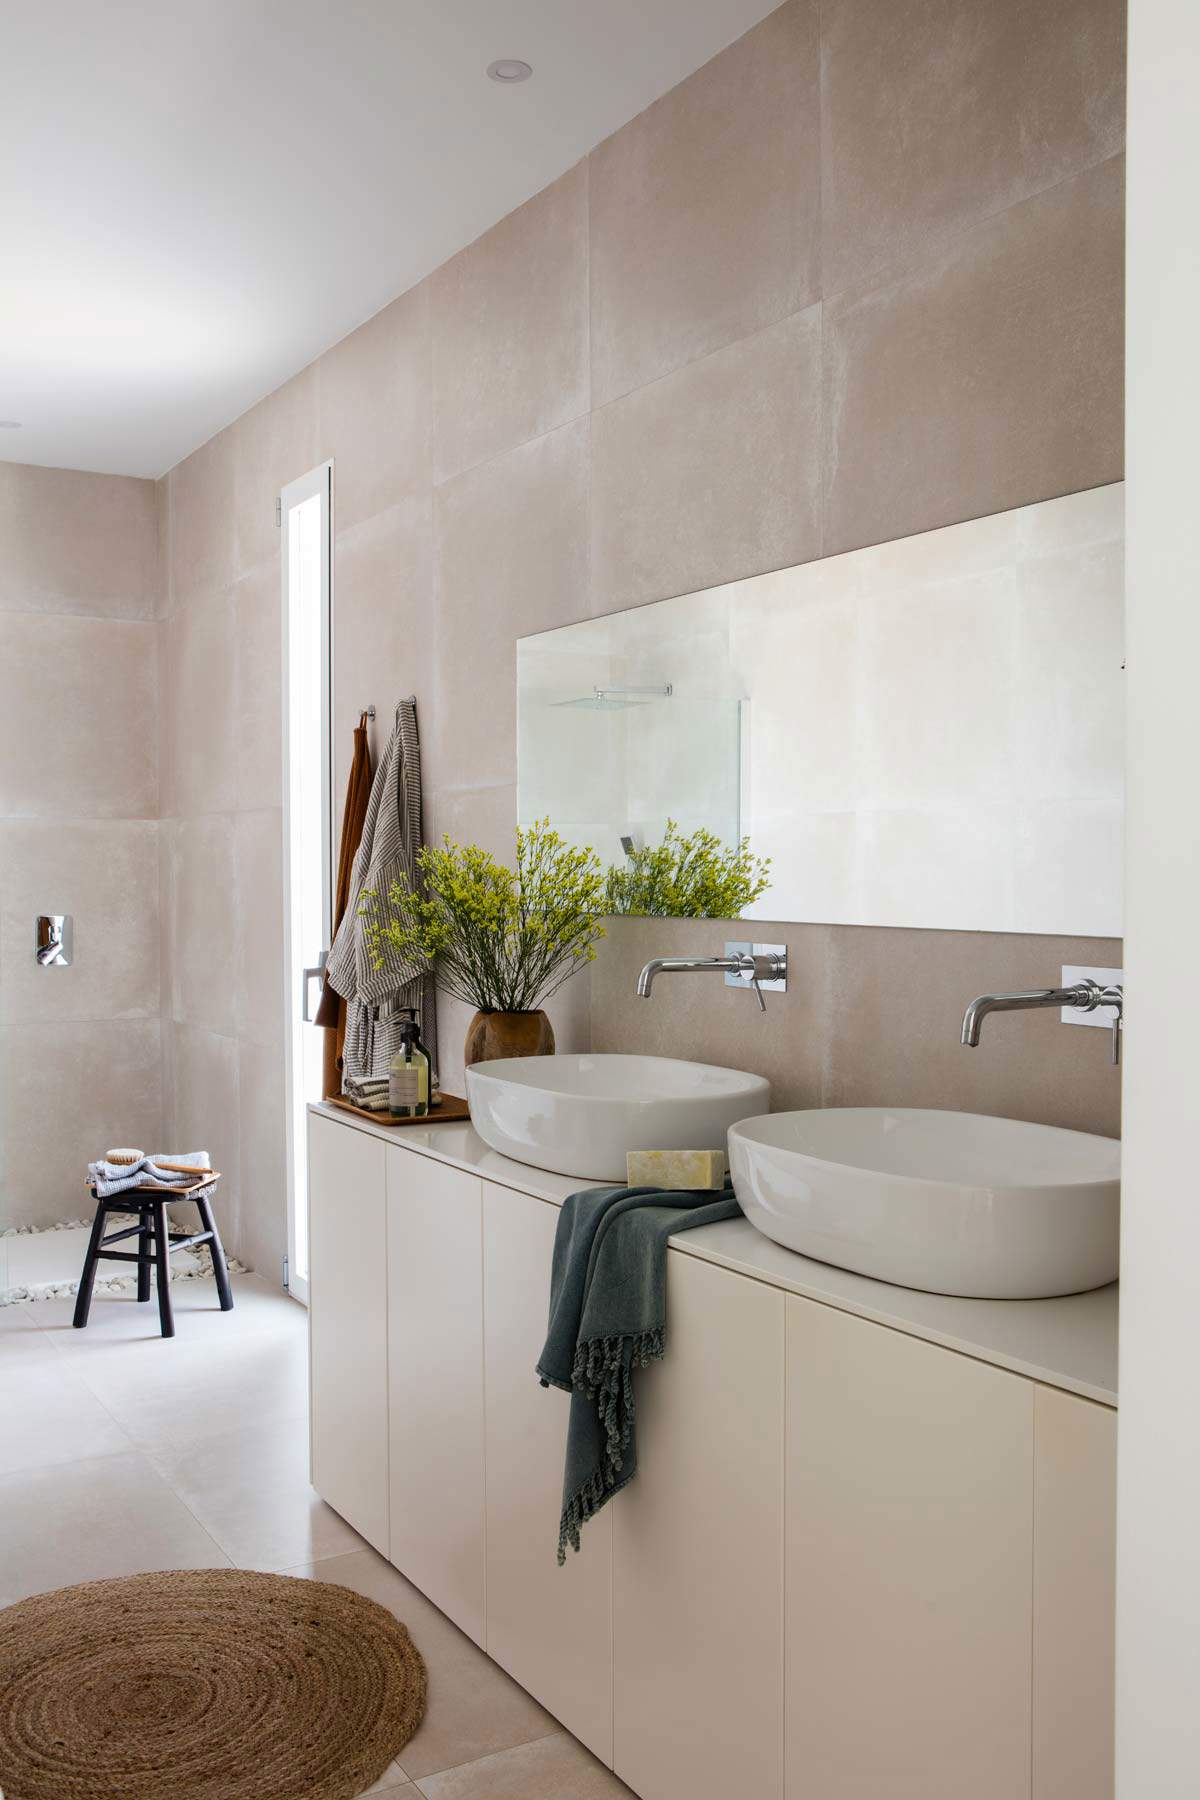 Baño minimalista con mueble de color topo y espejo rectangular sin marco. 